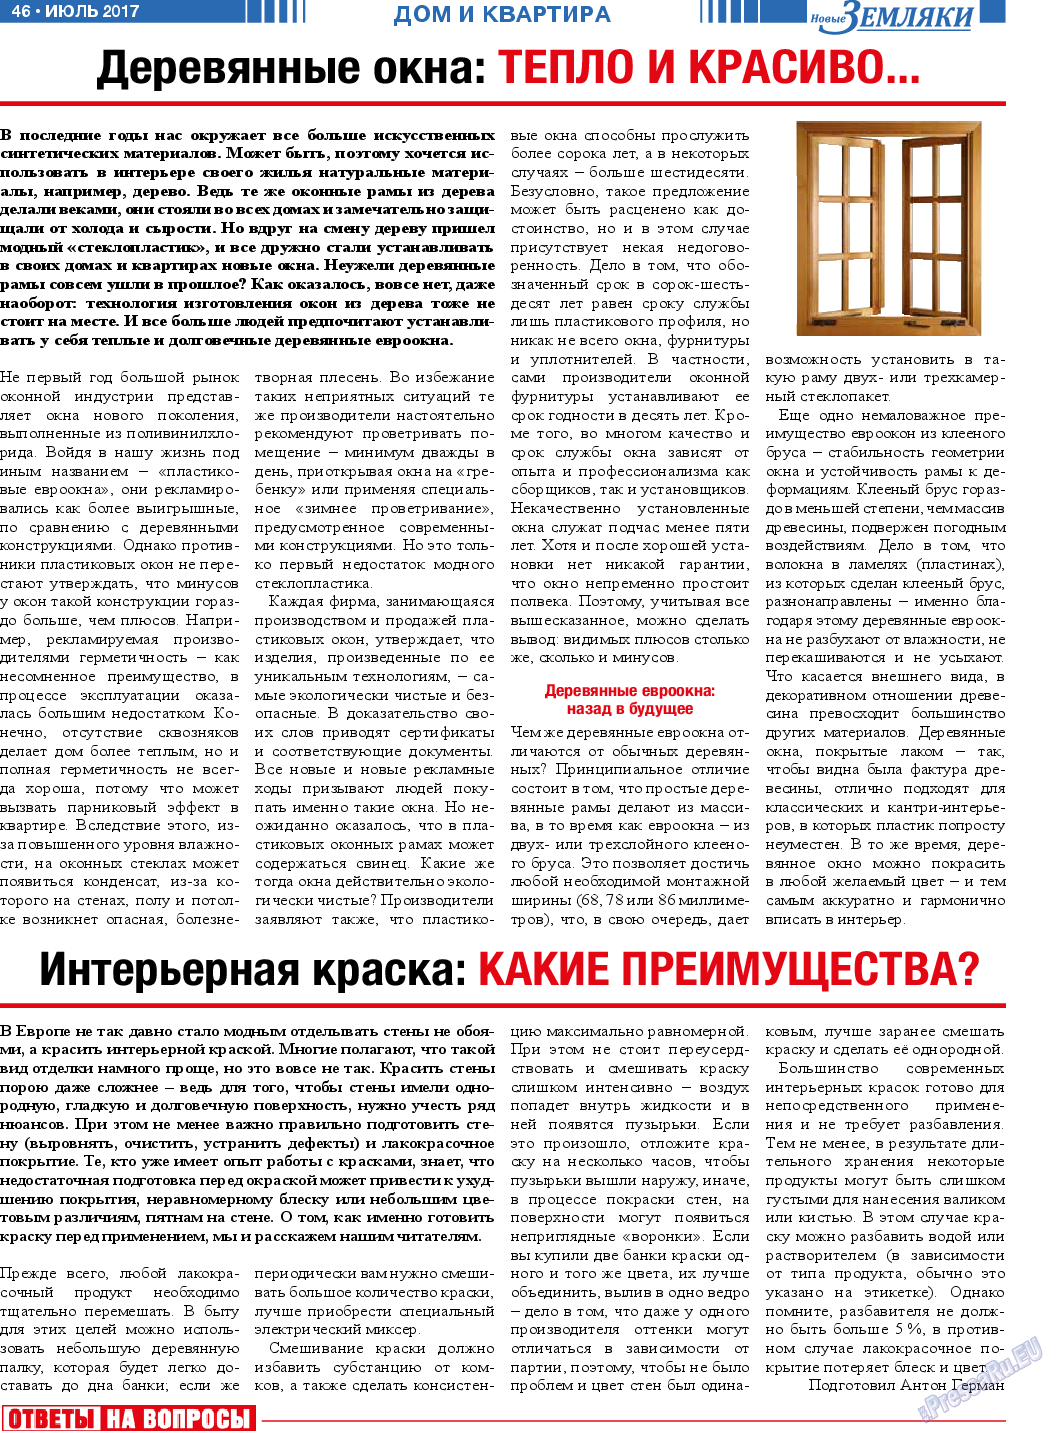 Новые Земляки, газета. 2017 №7 стр.46